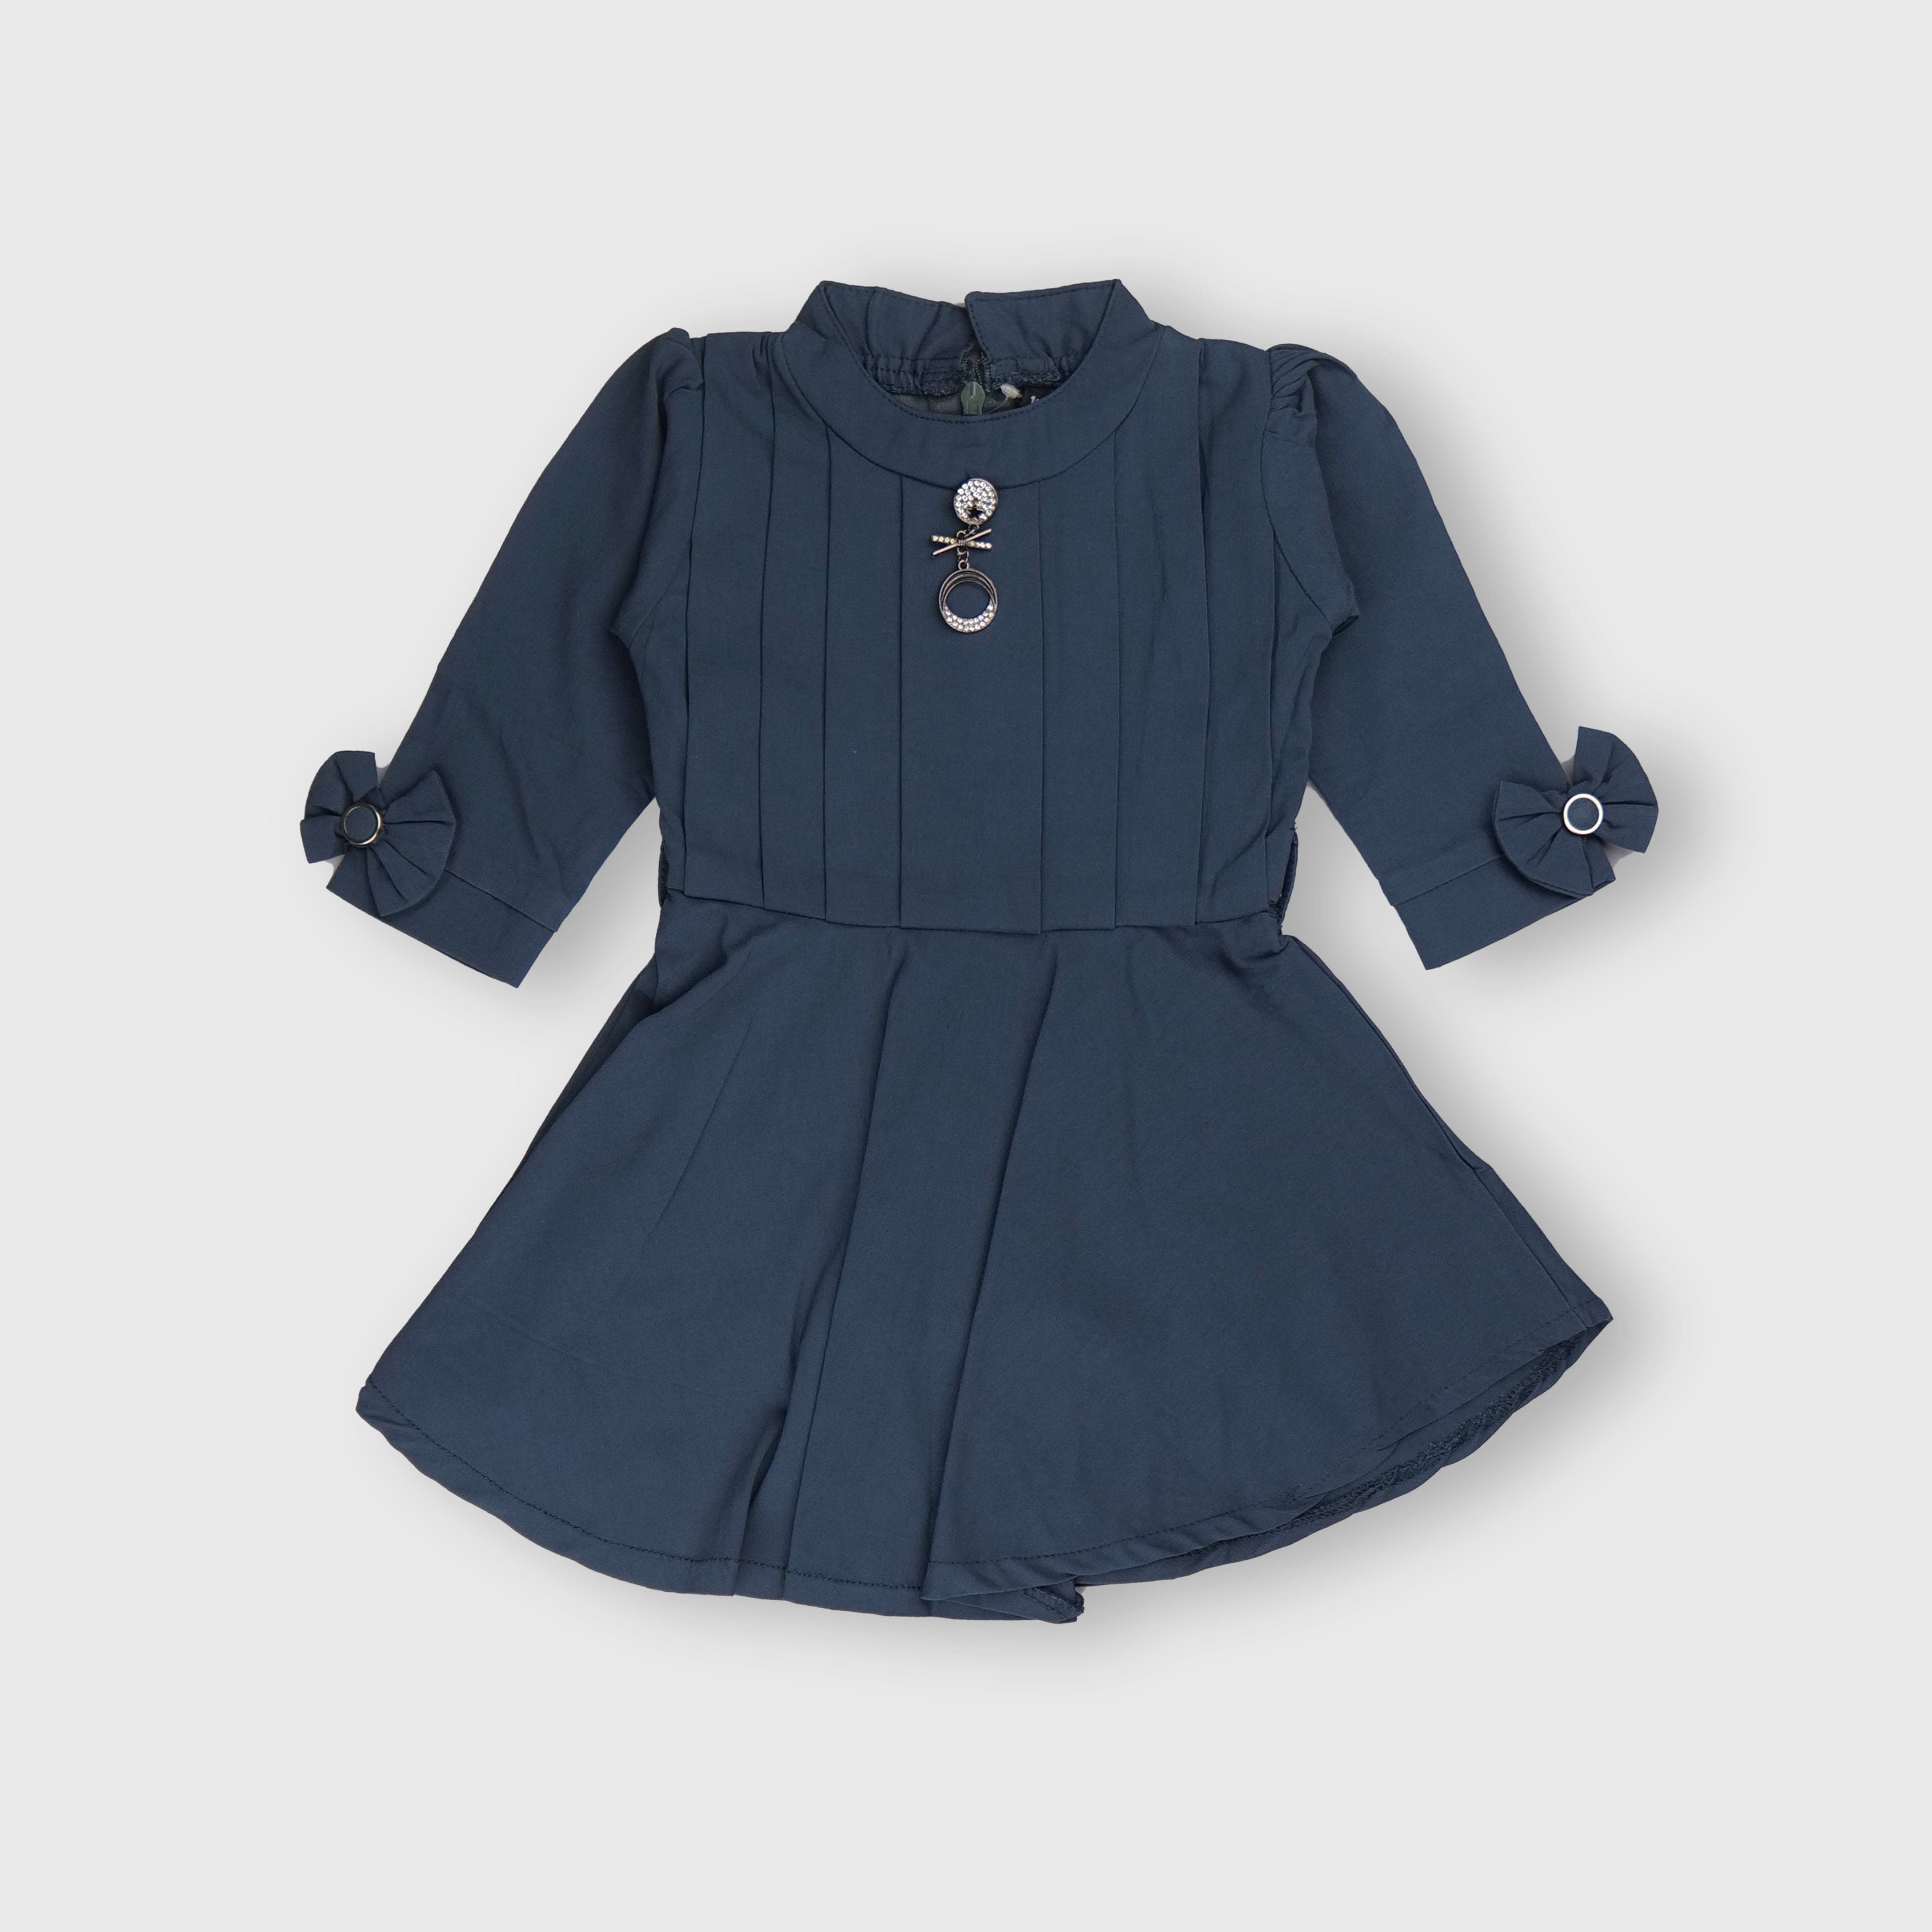 Buy Araishi 1st Birthday Baby Girl Dress - Signature Princess Costume Gift  for One Year Girls Online at desertcartINDIA